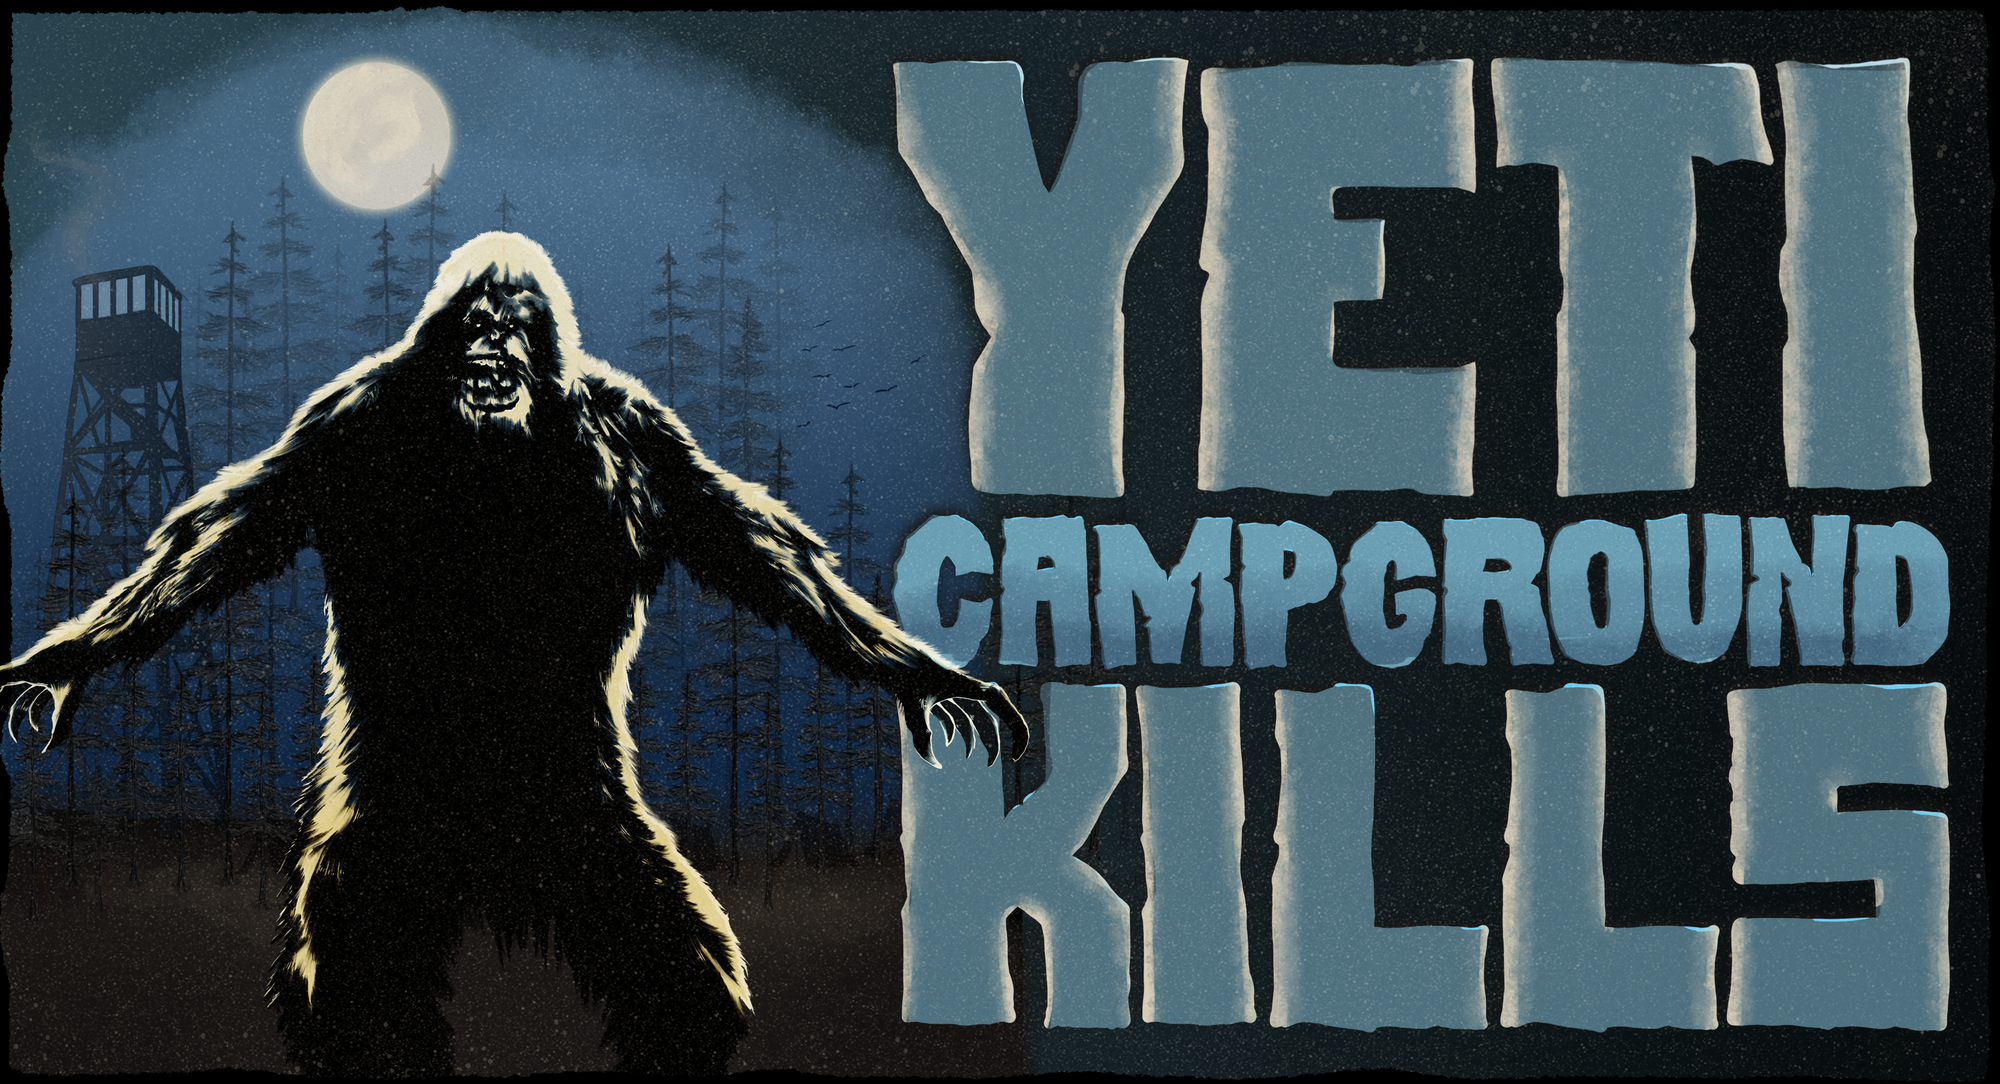 yeti campground kills hhn poster